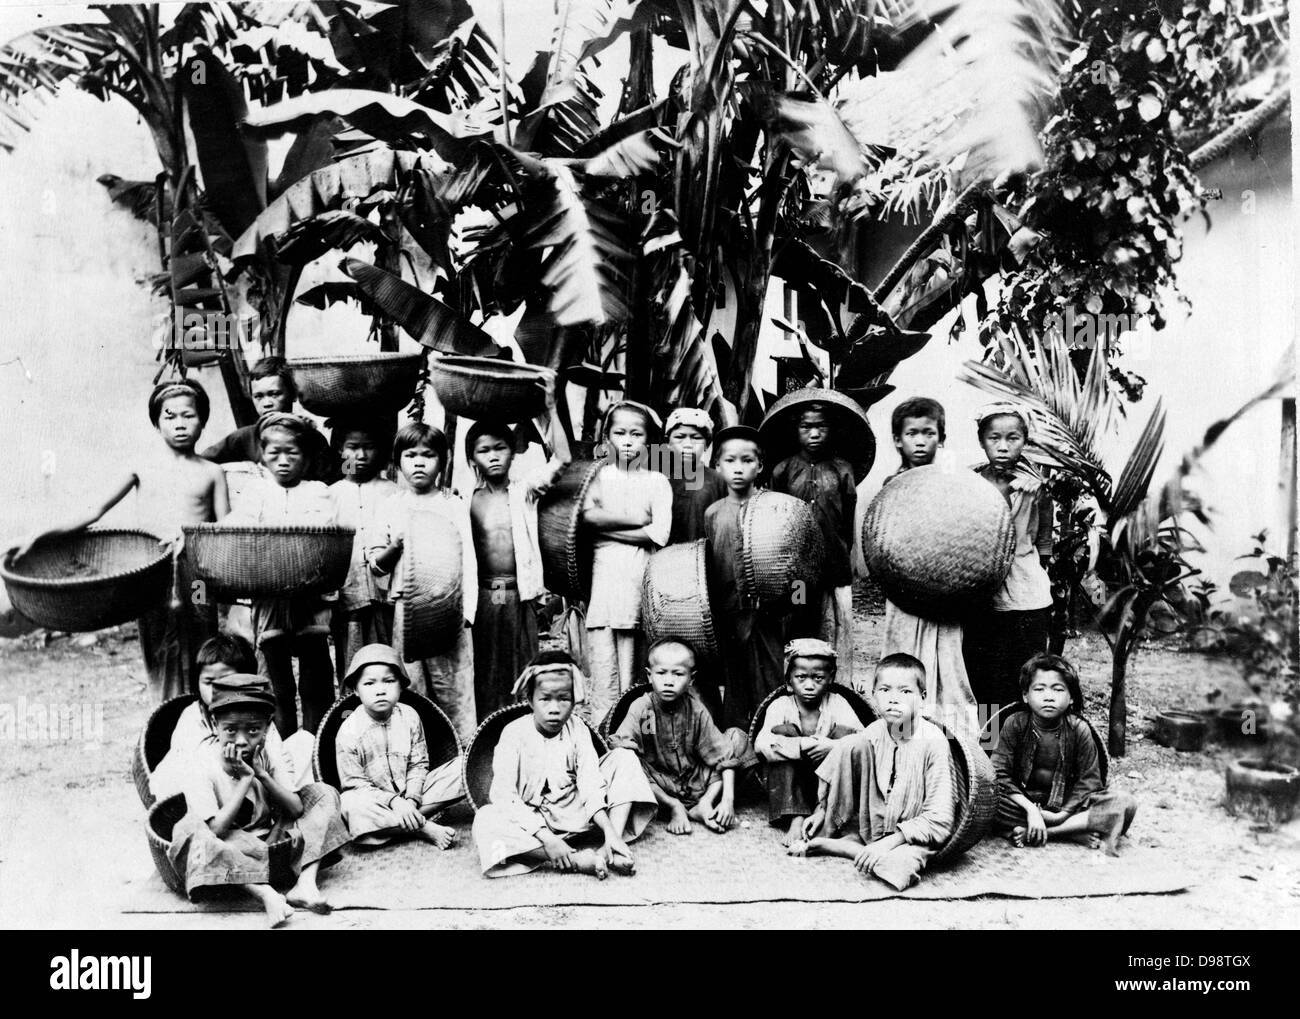 I bambini con realizzato localmente ceste poste sotto una palma, Saigon Vietnam del Sud, c1900. Saigon era la capitale e il centro commerciale del colonialismo francese in francese Indo-China. Foto Stock